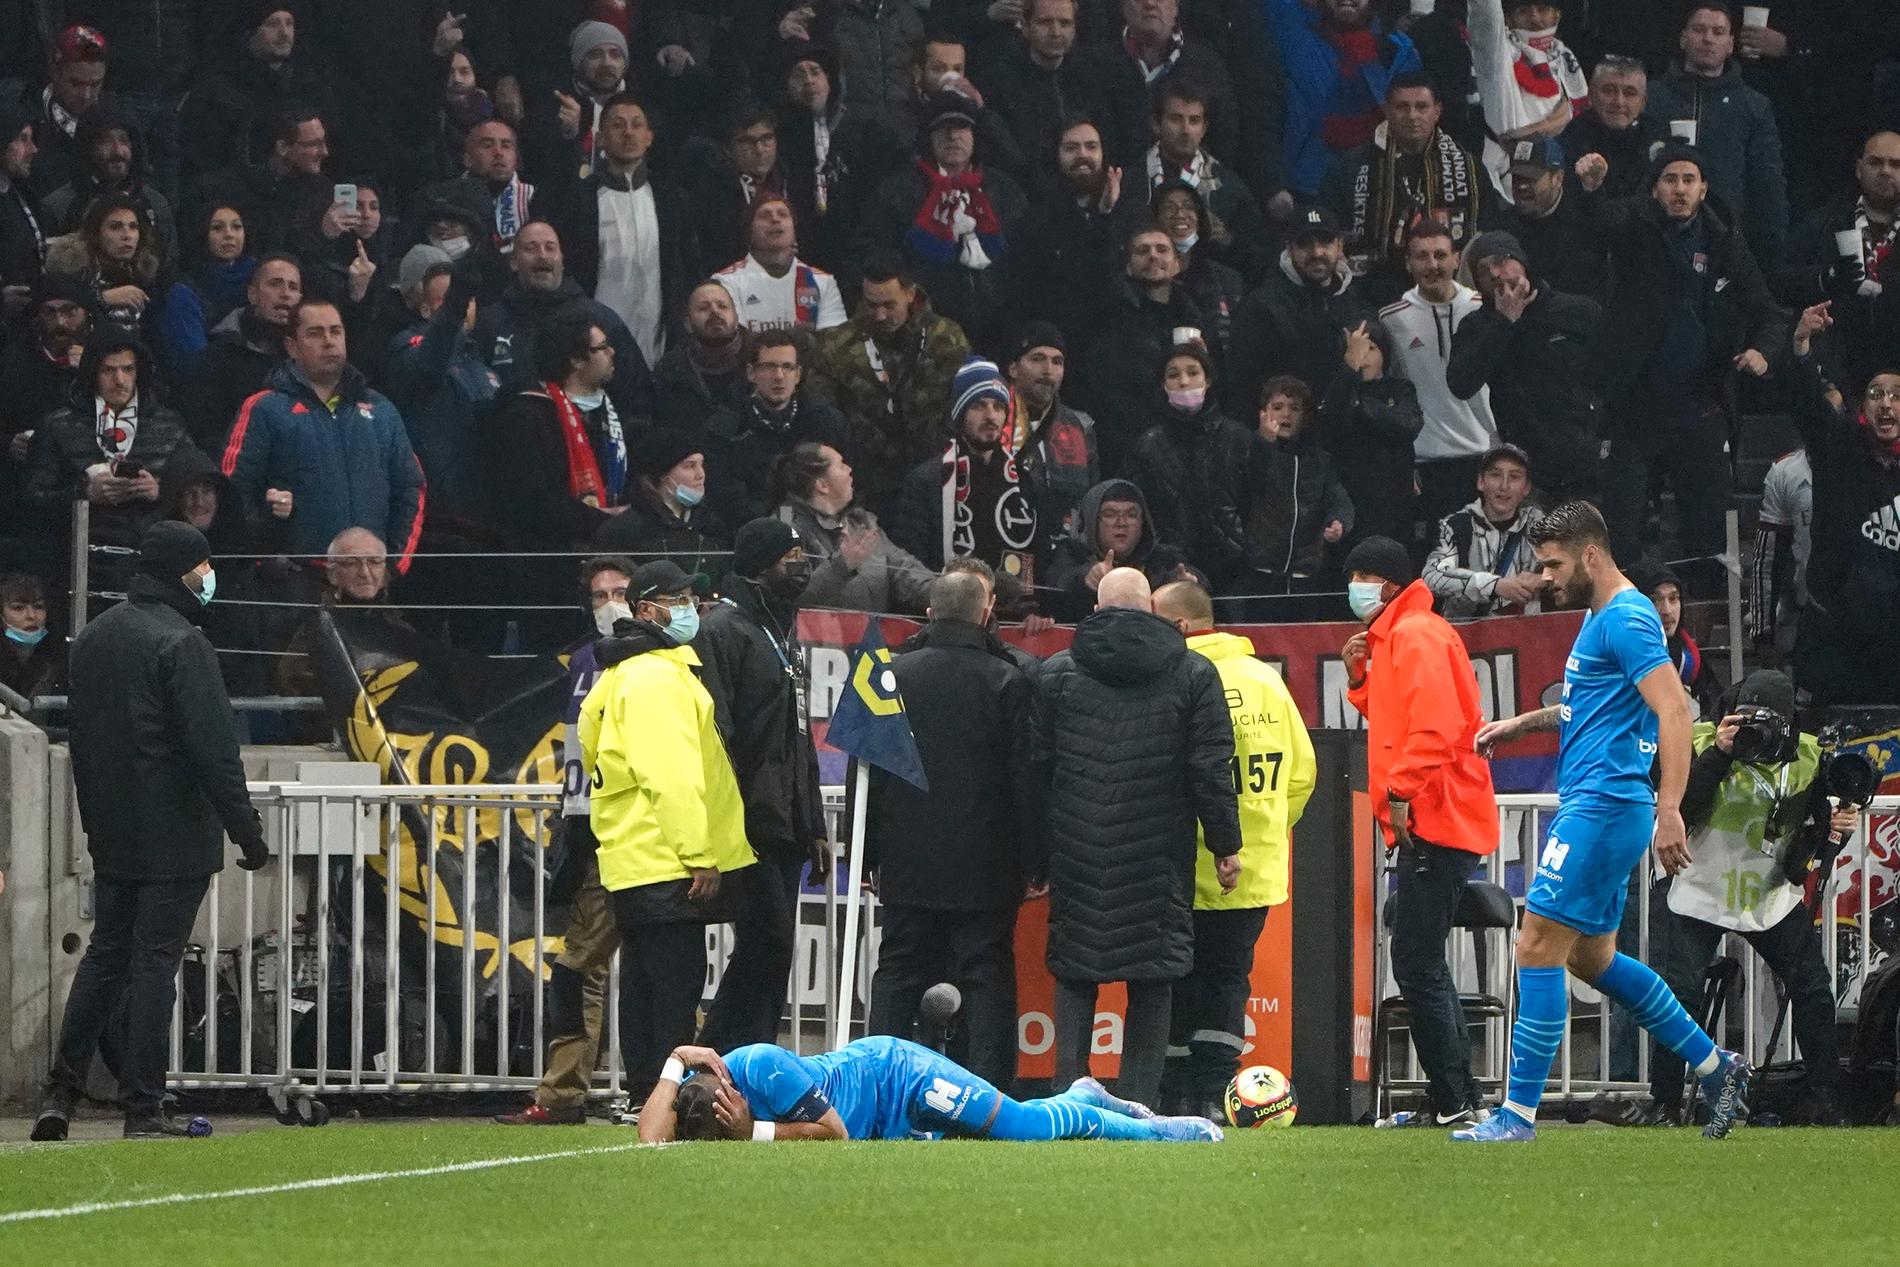 Marseilles Dimitri Payet blir liggande på planen efter att ha fått en flaska kastad i huvudet i bortamatchen mot Lyon. Matchen sköts upp efter skandalen och den franska idrottsministern kallar händelsen för oacceptabel.